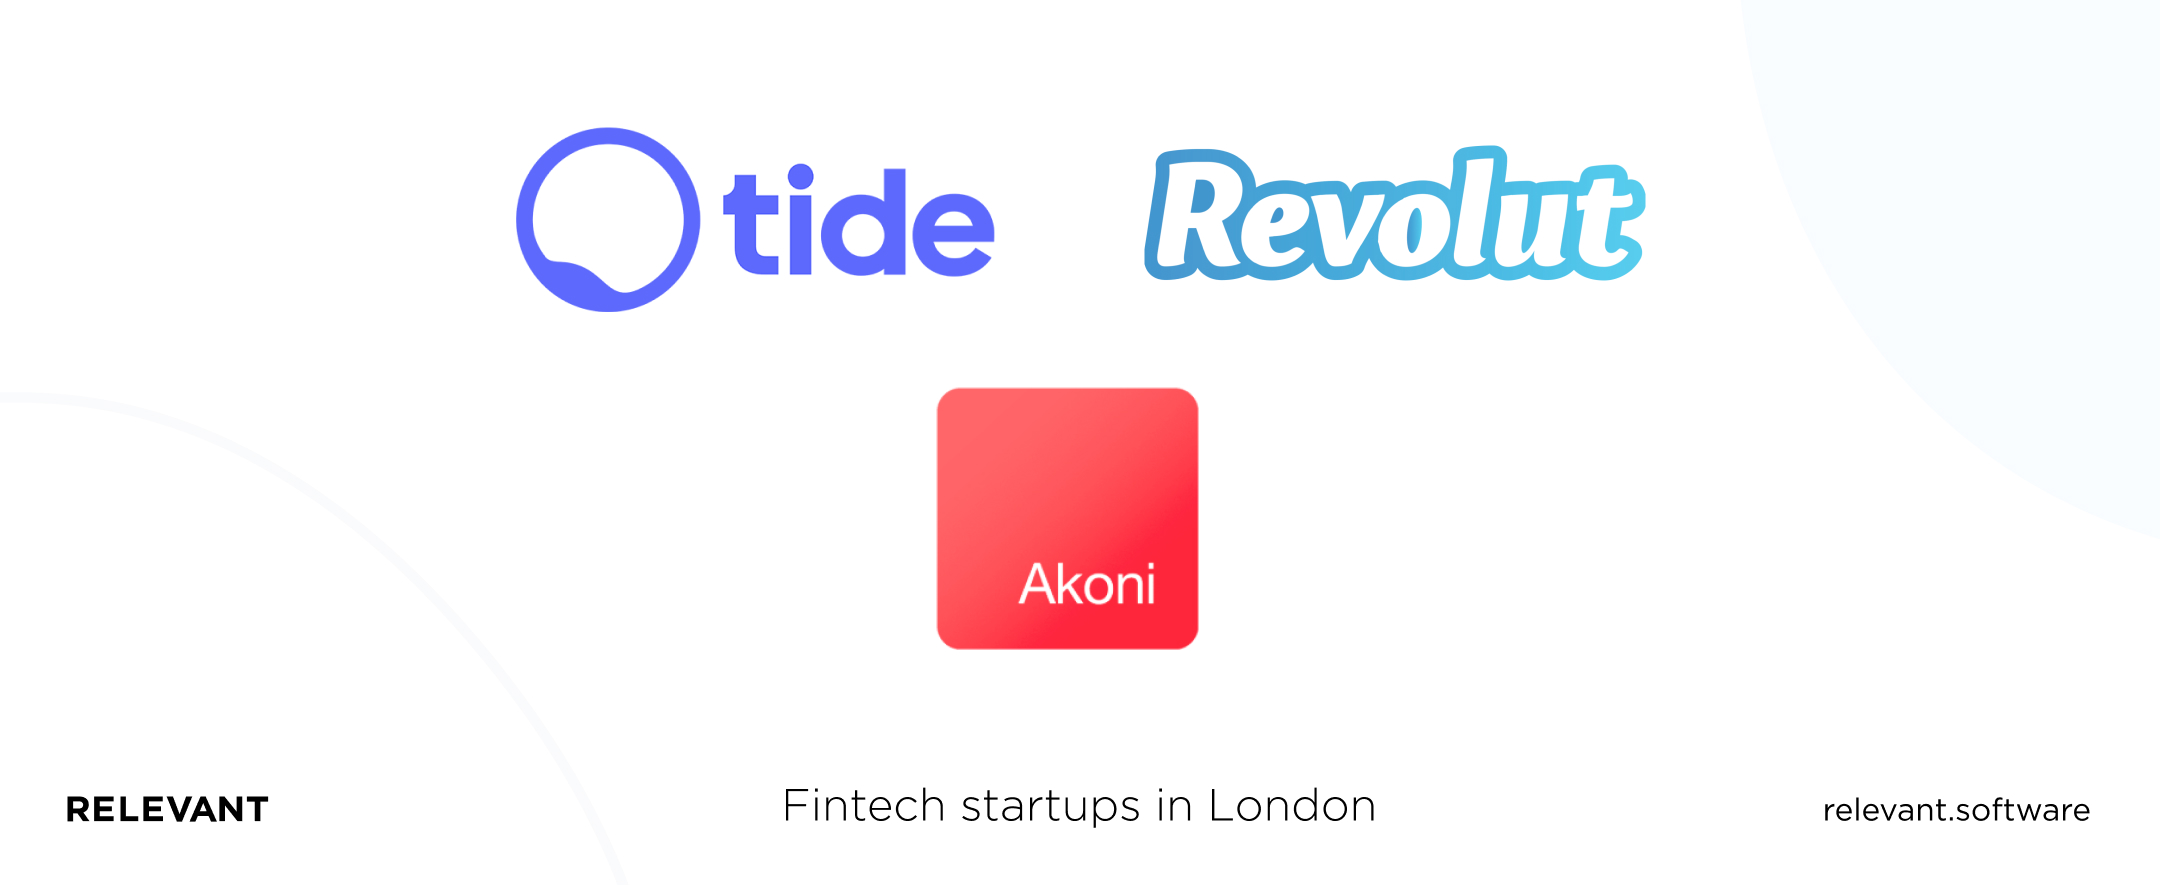 Fintech startups in London